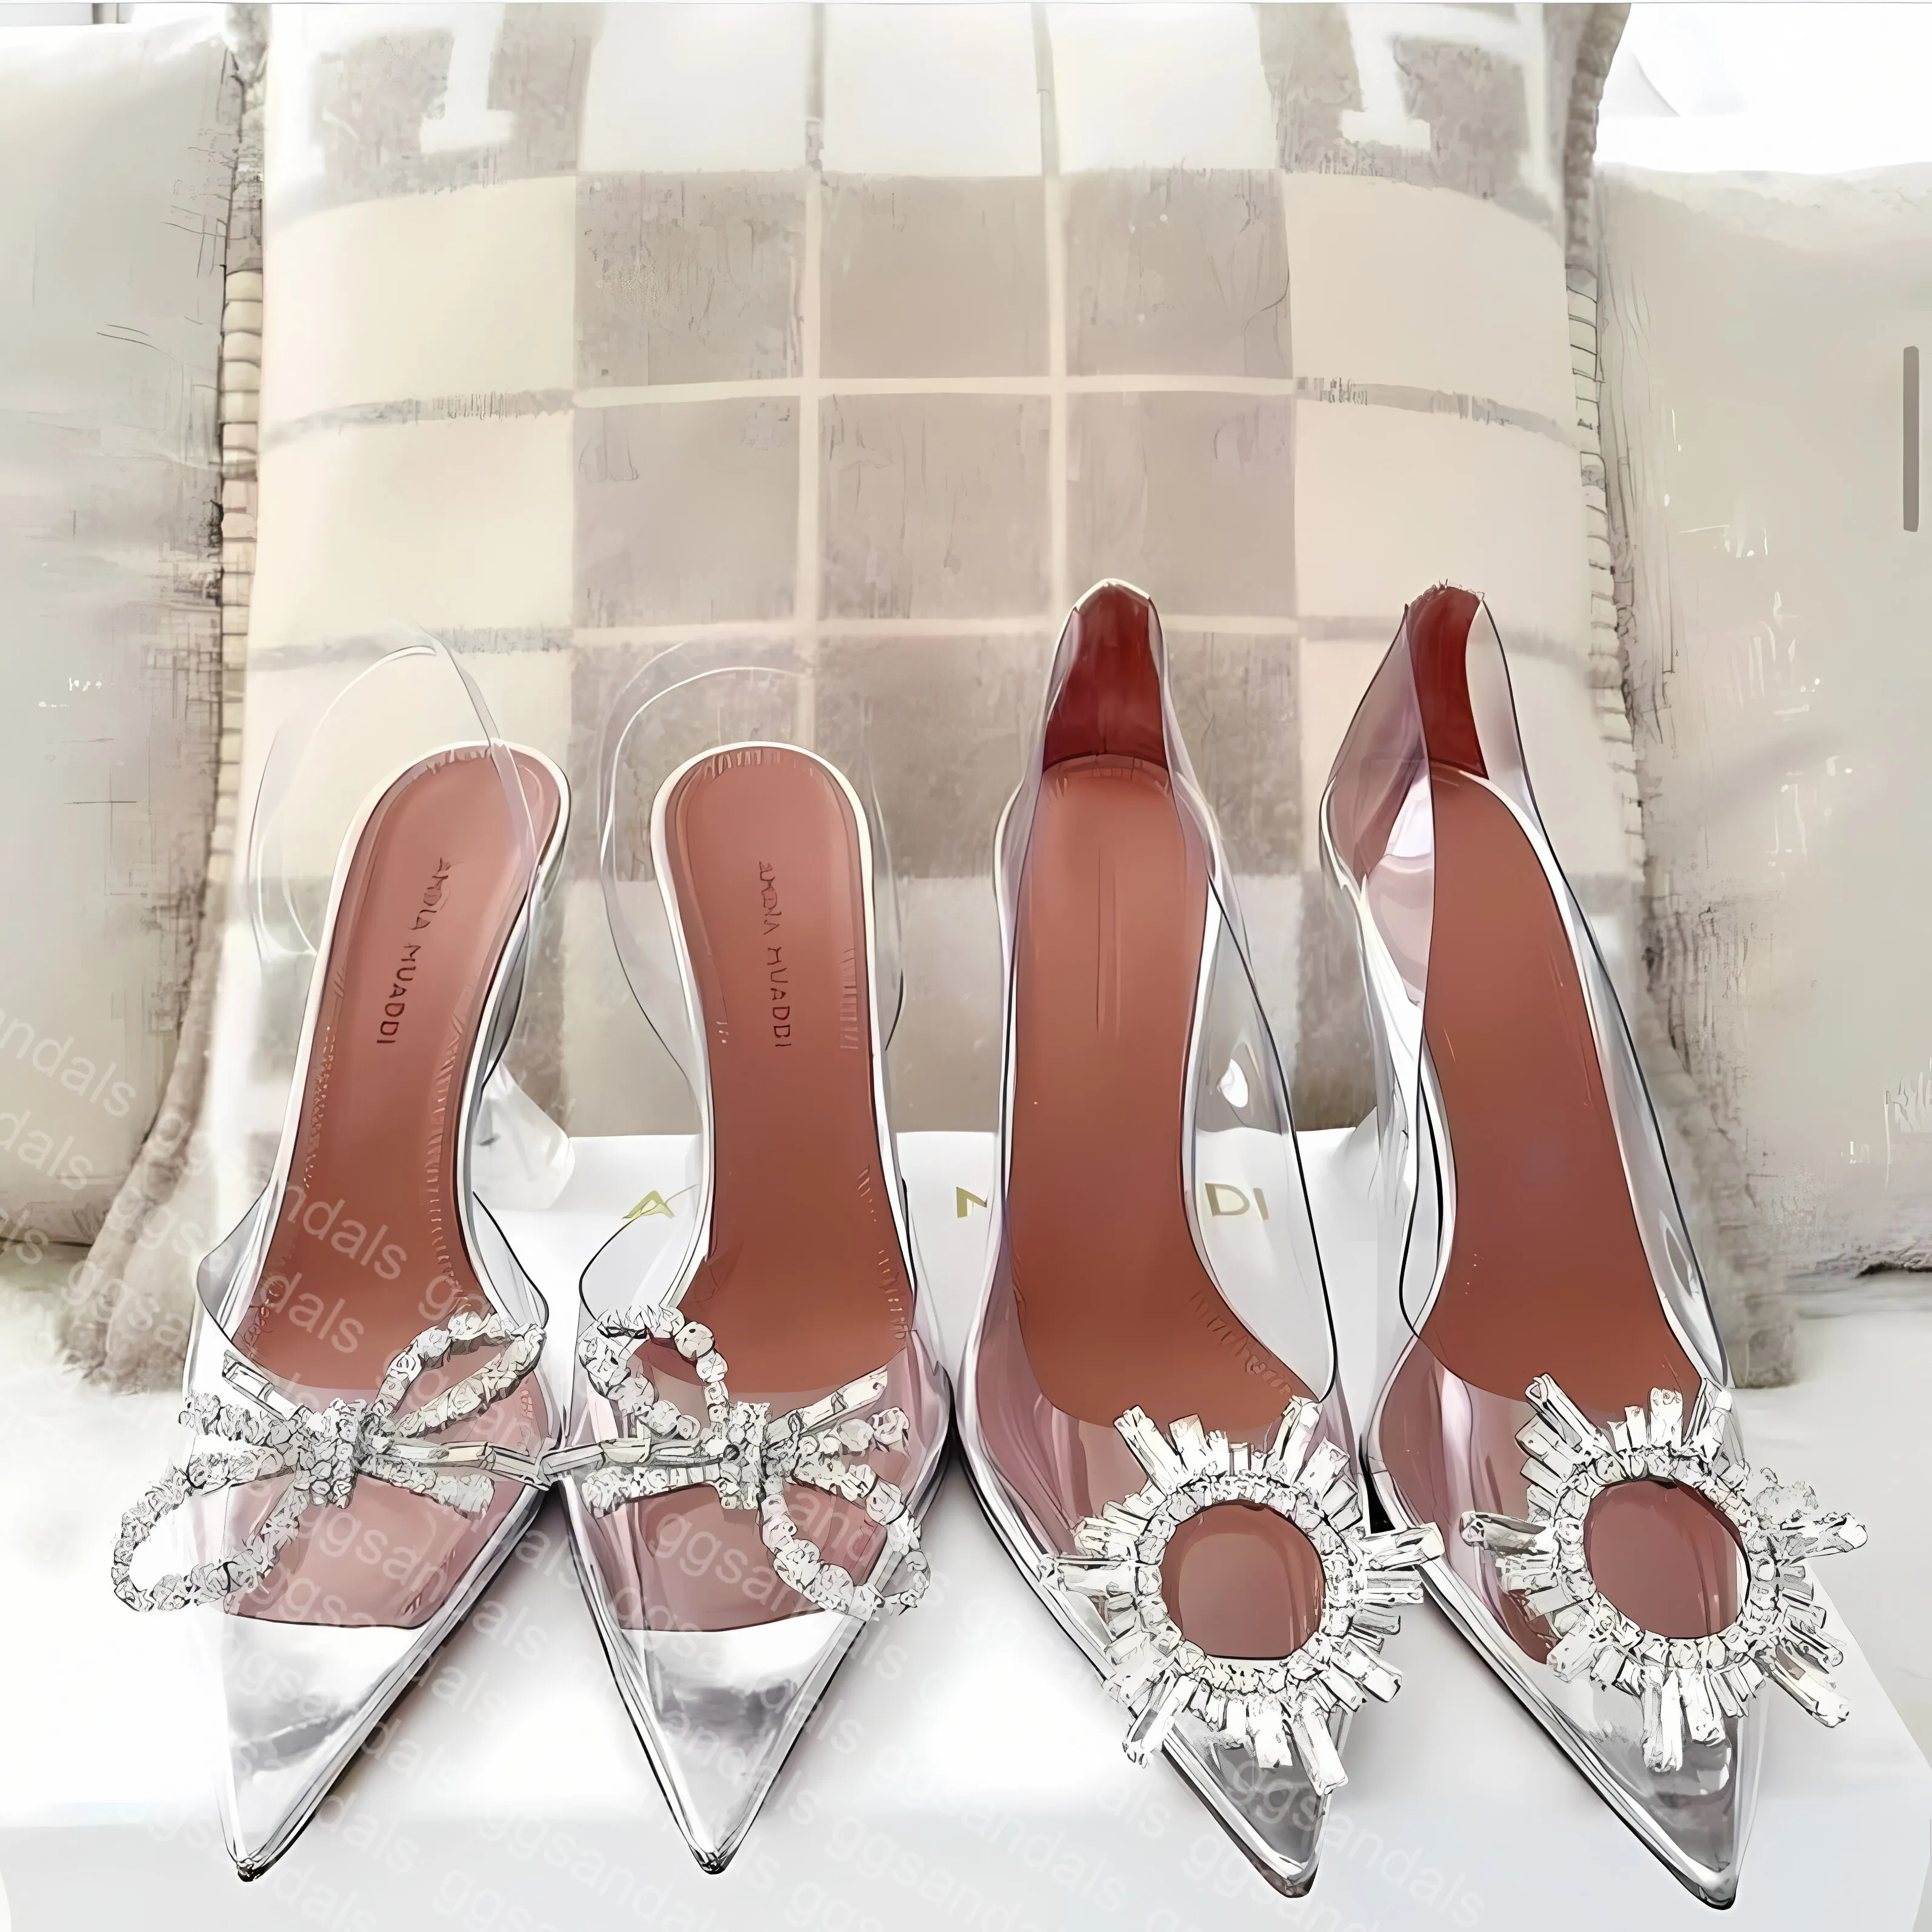 Amina Muaddi scarpe iniziate designer di lusso scarpe eleganti in pvc trasparente pompe traslucide sandali con tacco a rocchetto sandali da sera da donna con tacco